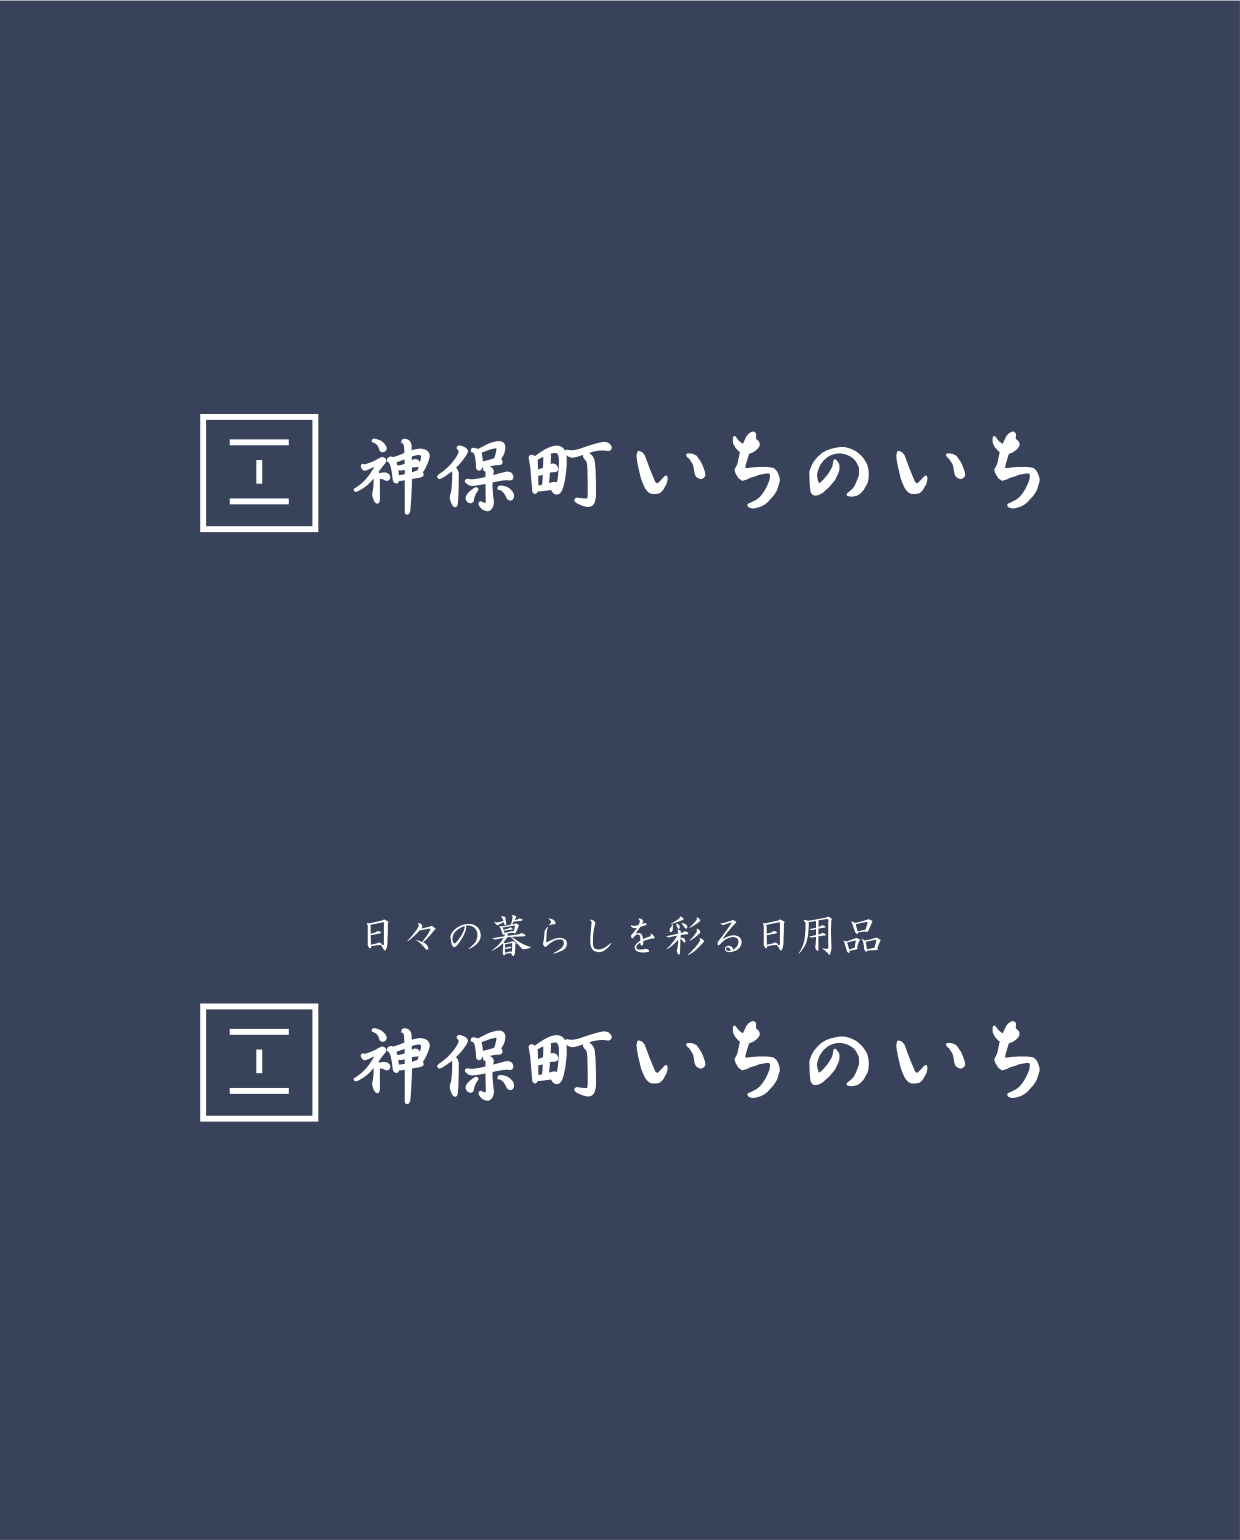 inoichi_logo